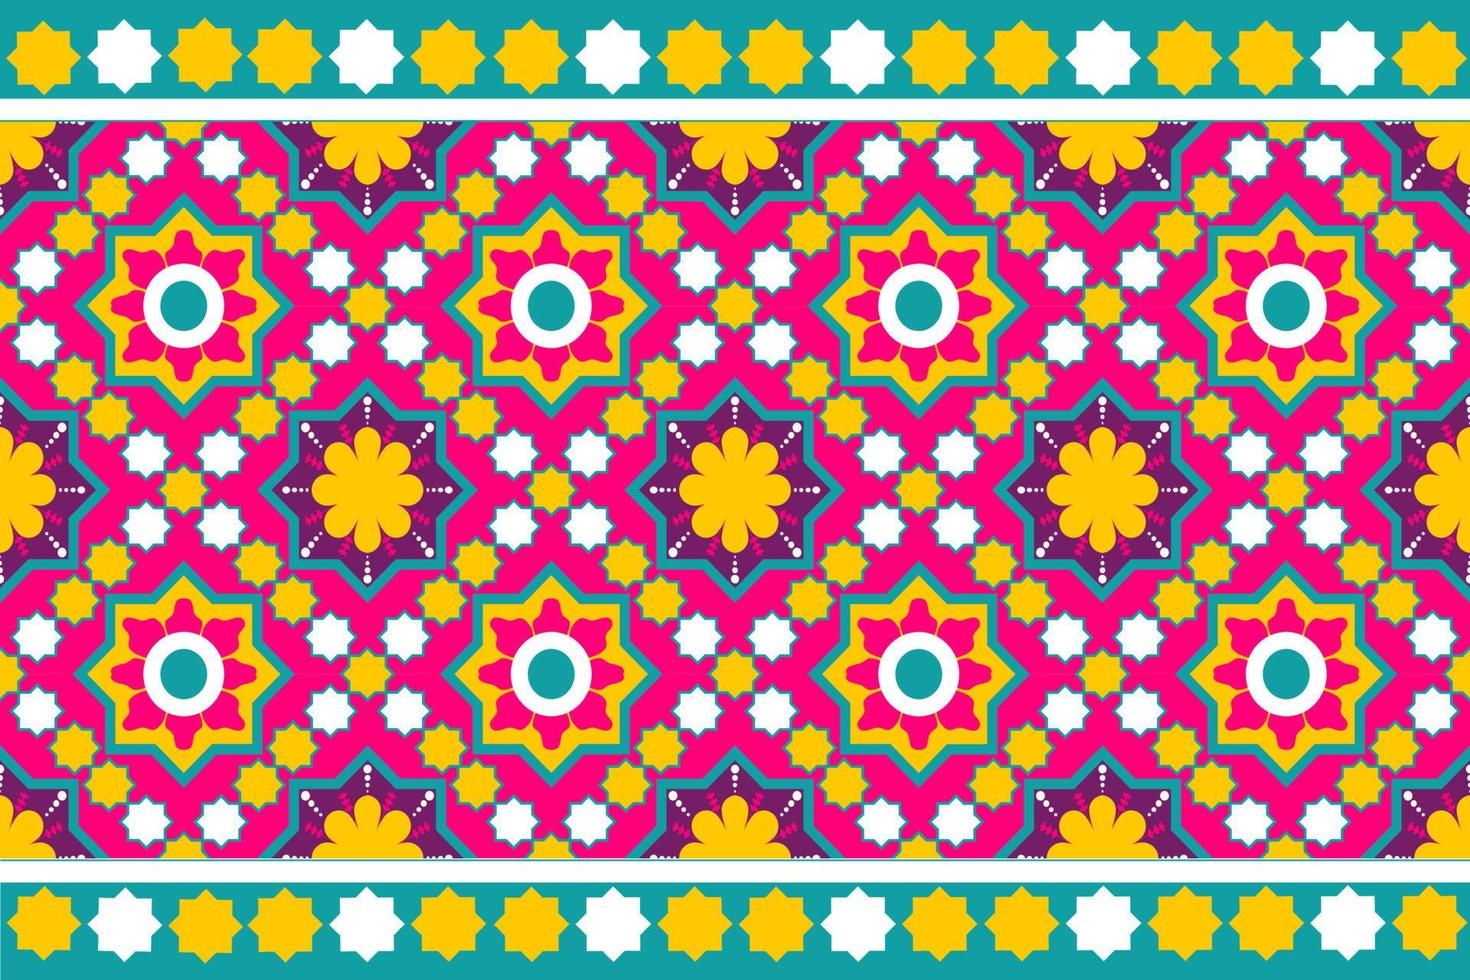 kleurrijke Marokko en Indiase etnische motief naadloze patroon met natuur traditionele achtergrondontwerp voor tapijt, behang, kleding, inwikkeling, batik, stof, vector illustratie borduurstijl.